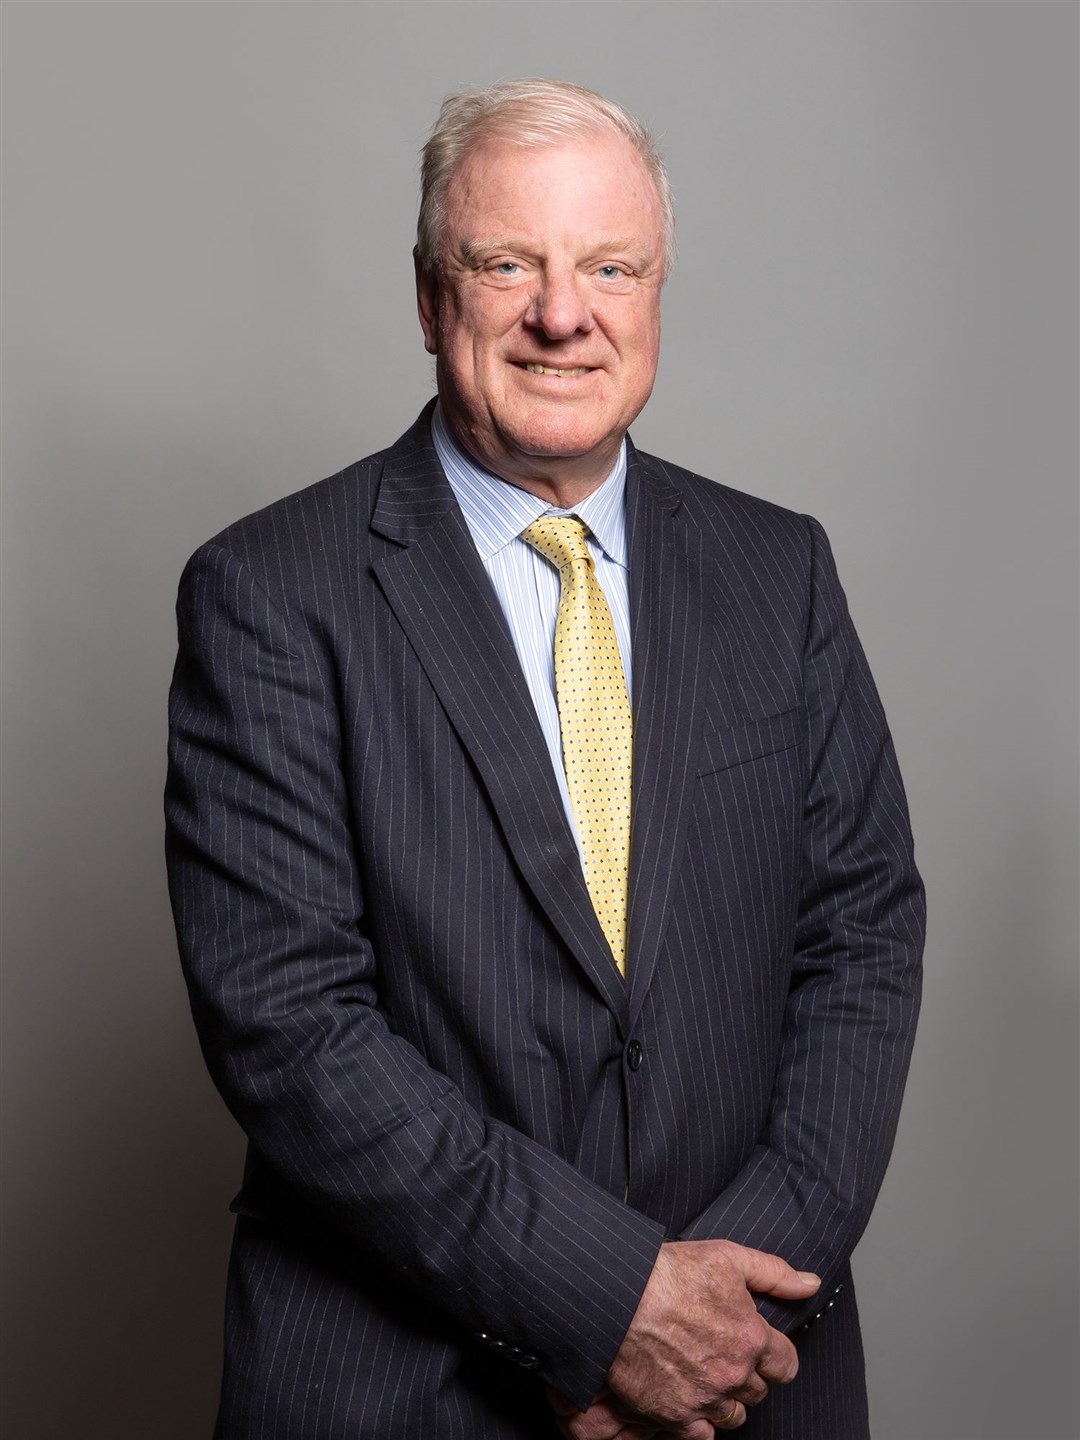 Sir Edward Leigh, MP for Gainsborough (Richard Townshend/UK Parliament/PA)